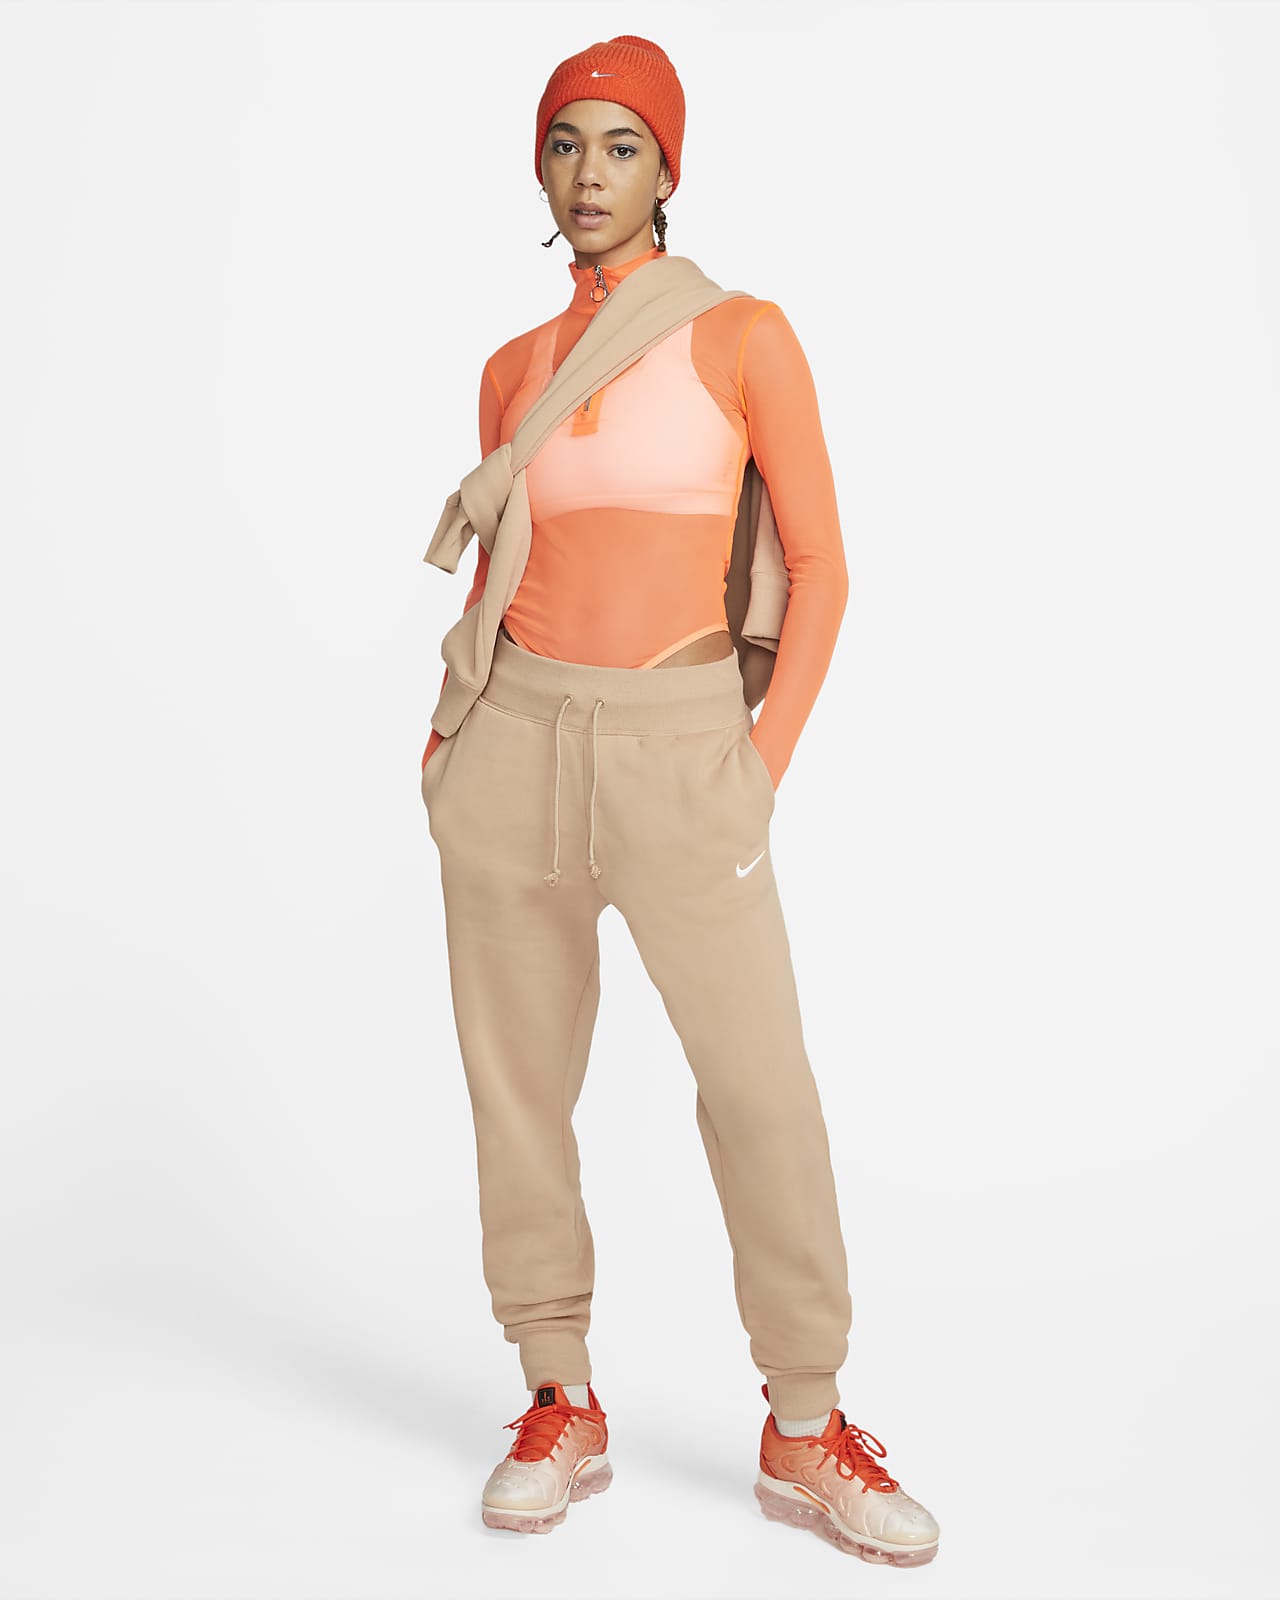 Jogging large taille haute femme Nike Phoenix Fleece - Nike - Marques -  Textile